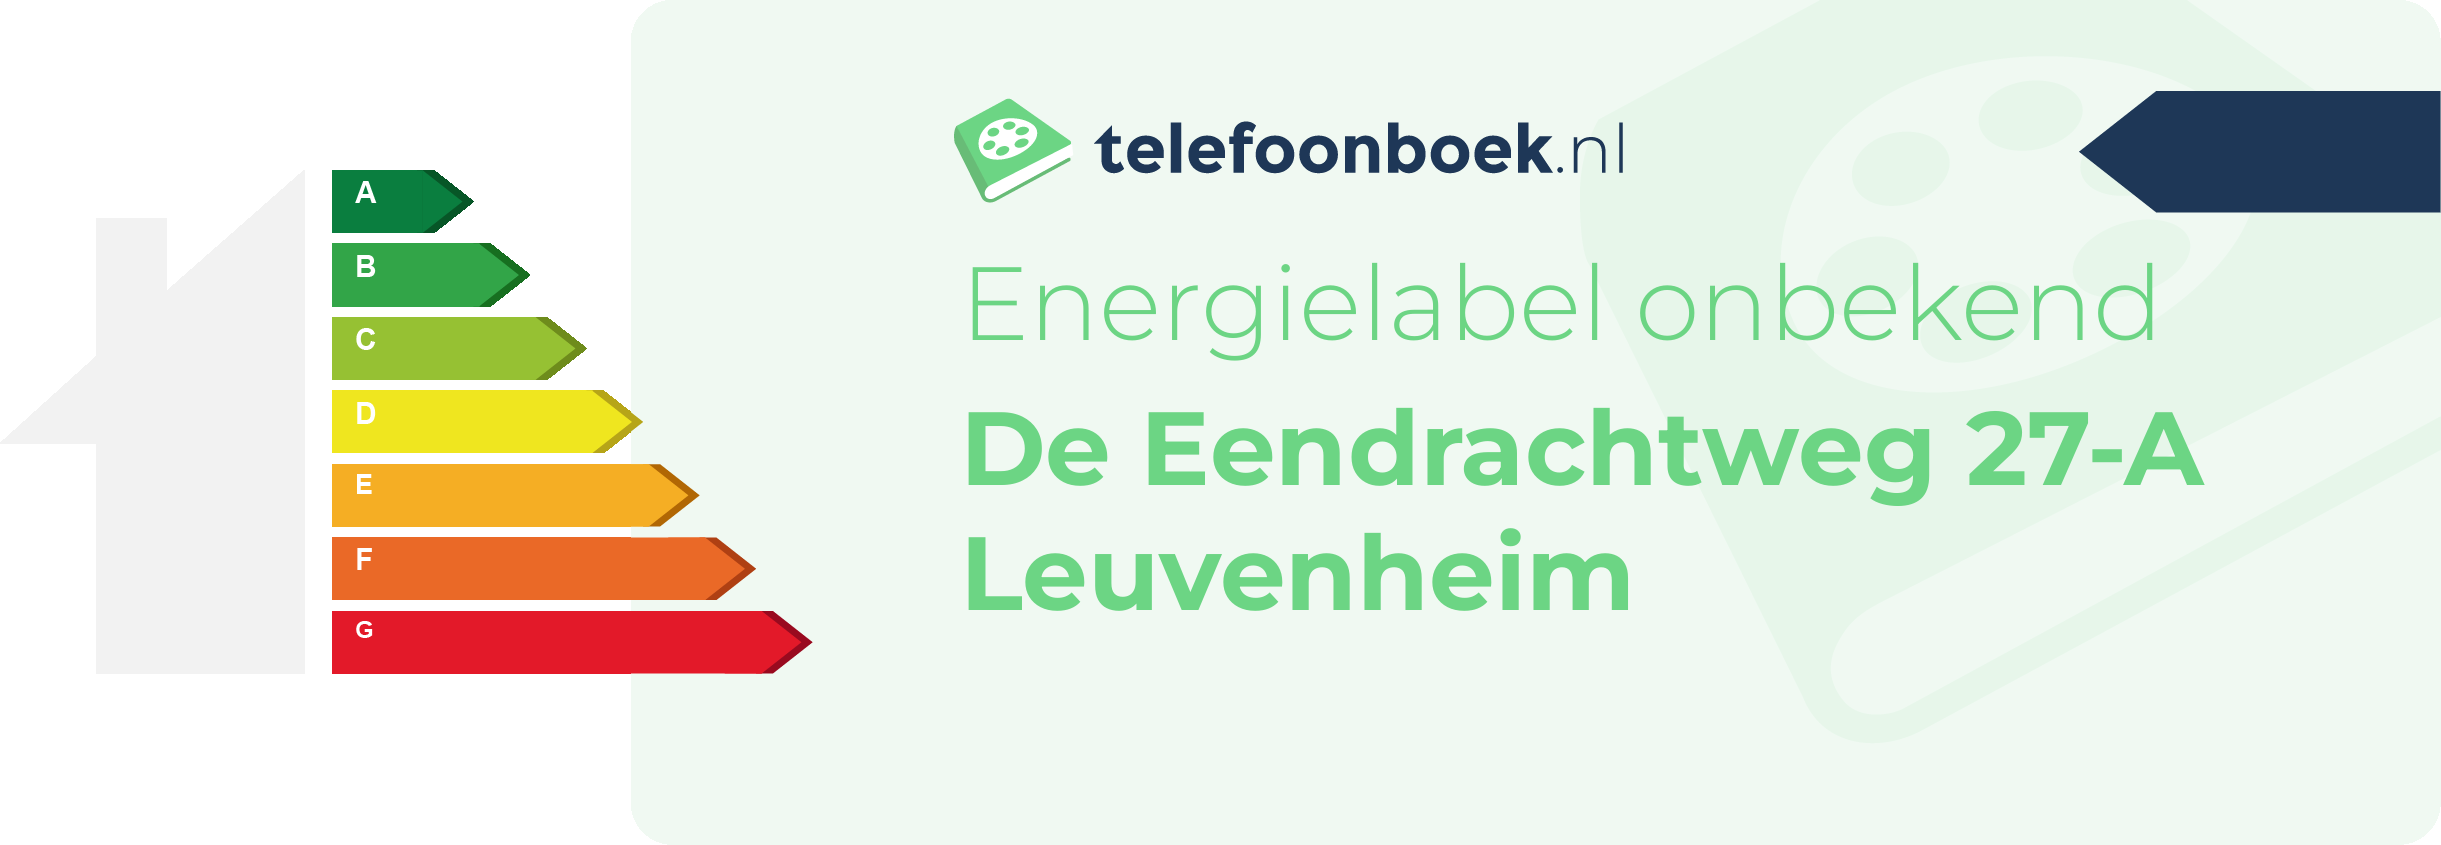 Energielabel De Eendrachtweg 27-A Leuvenheim